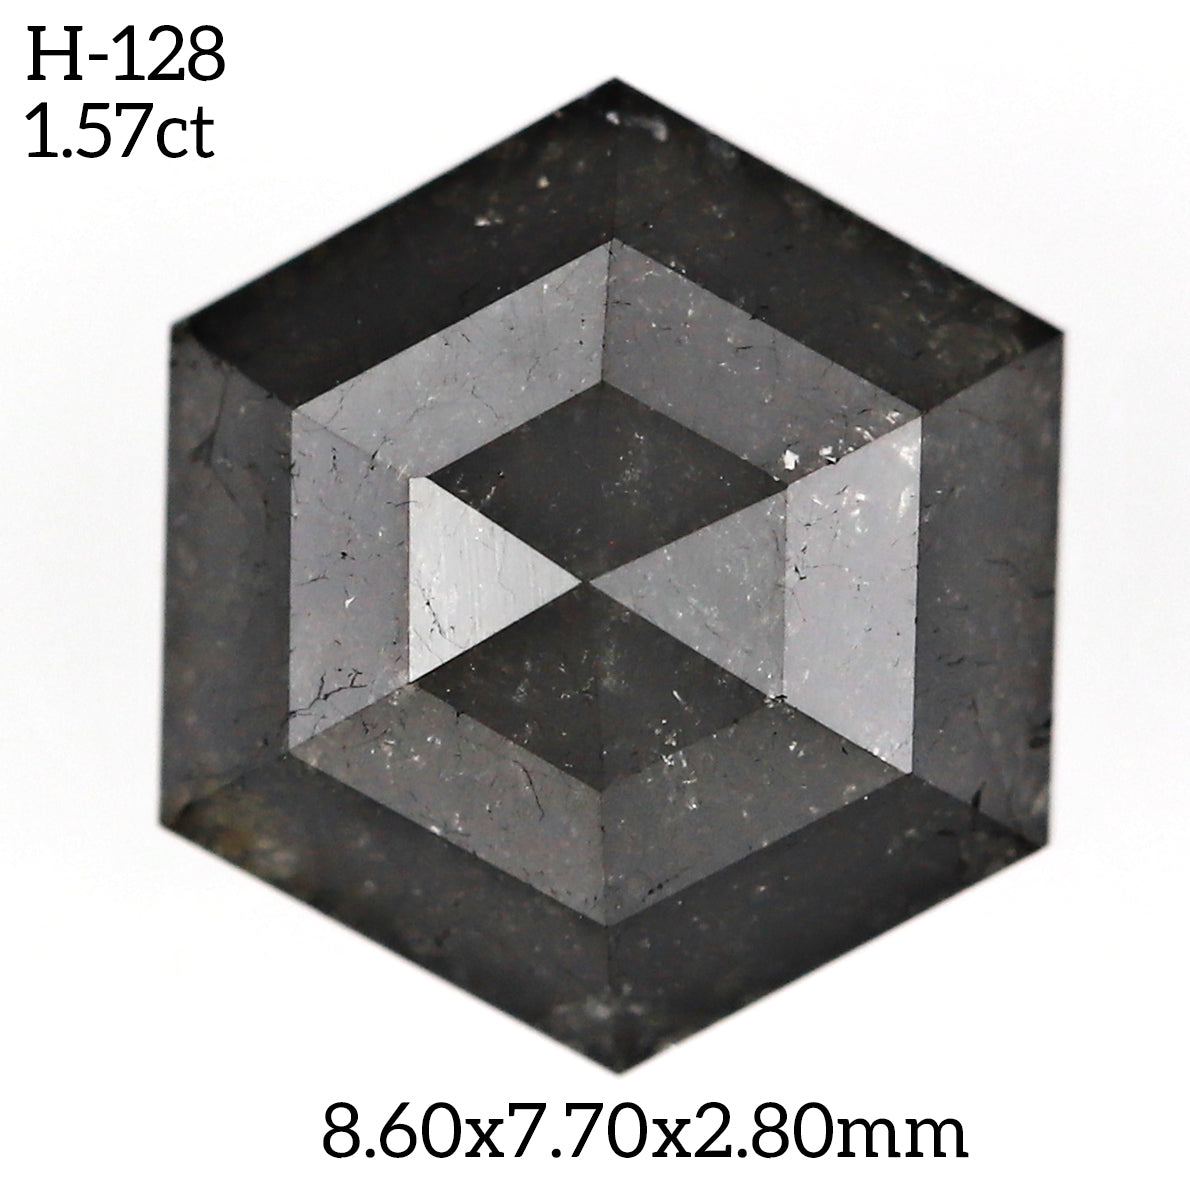 H128 - Salt and pepper hexagon diamond